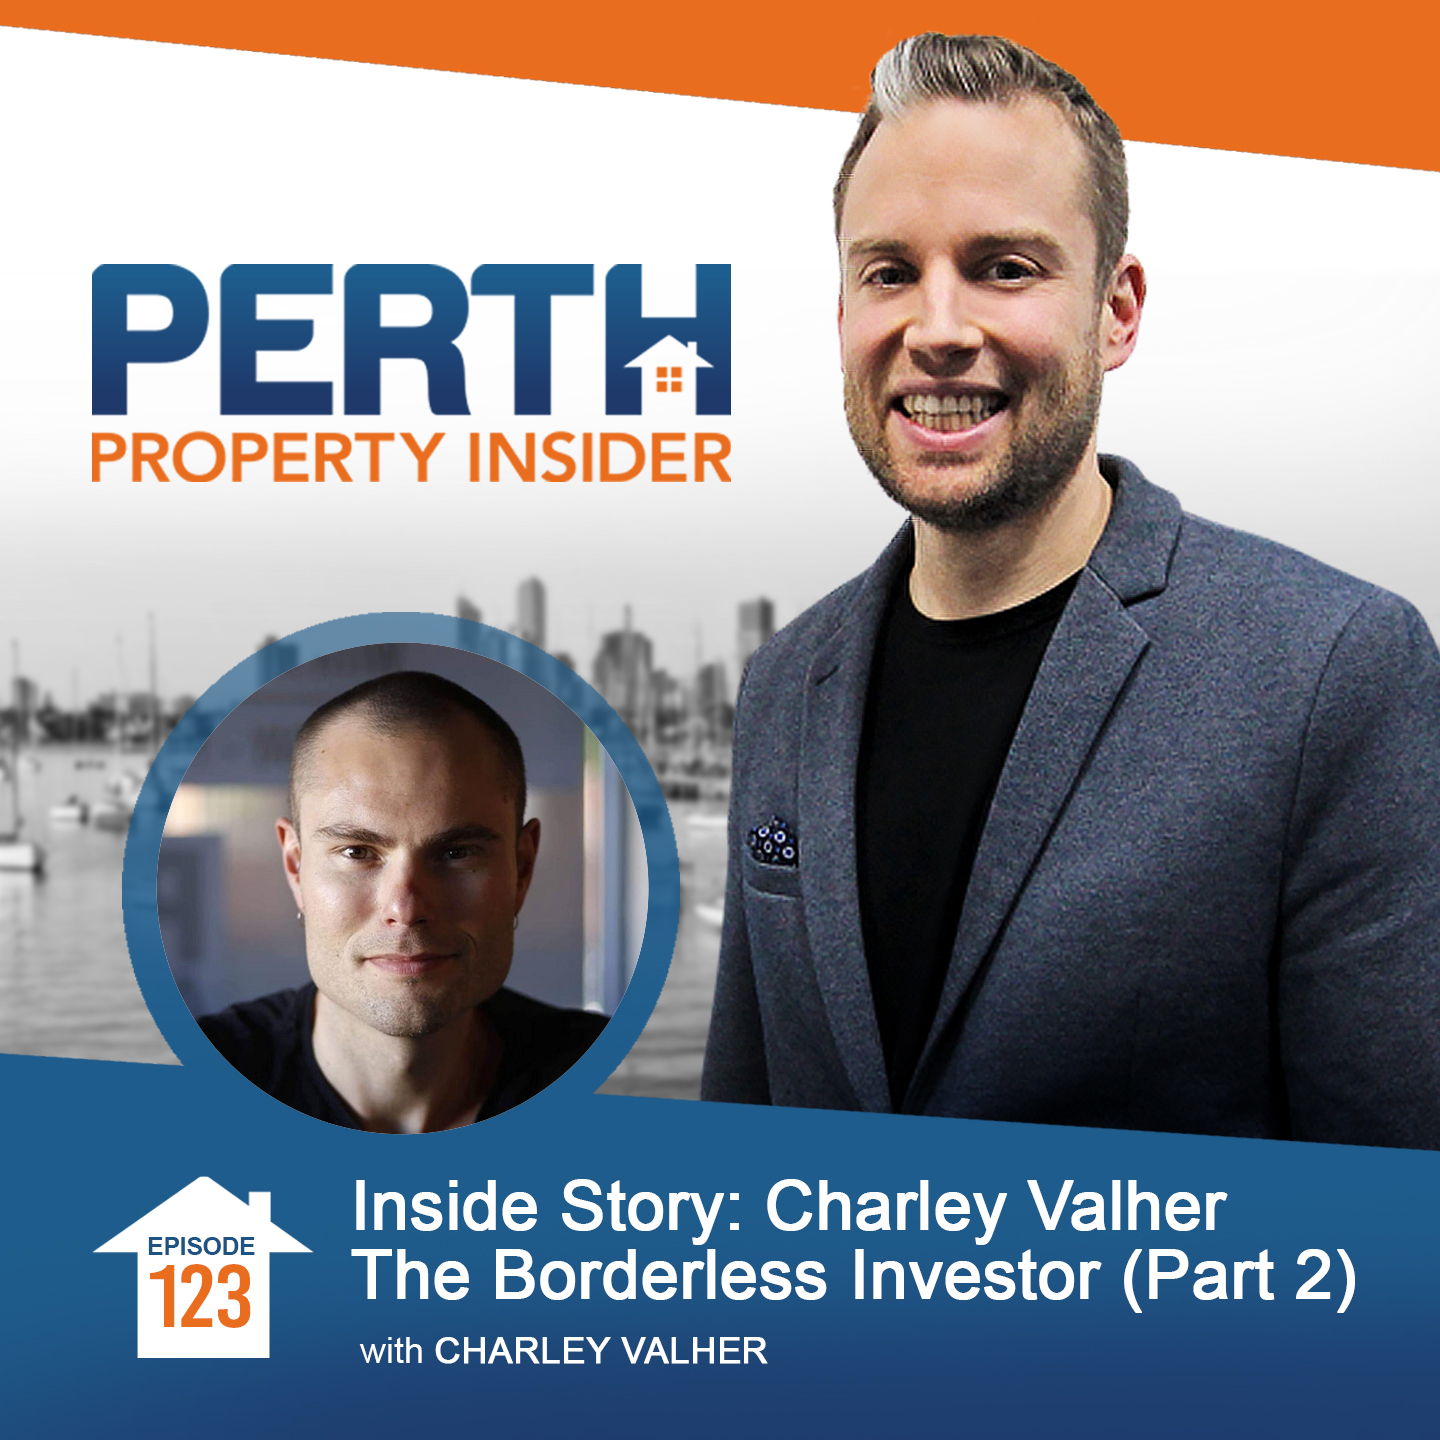 Inside Story: Charley Valher The Borderless Investor (Part 2)